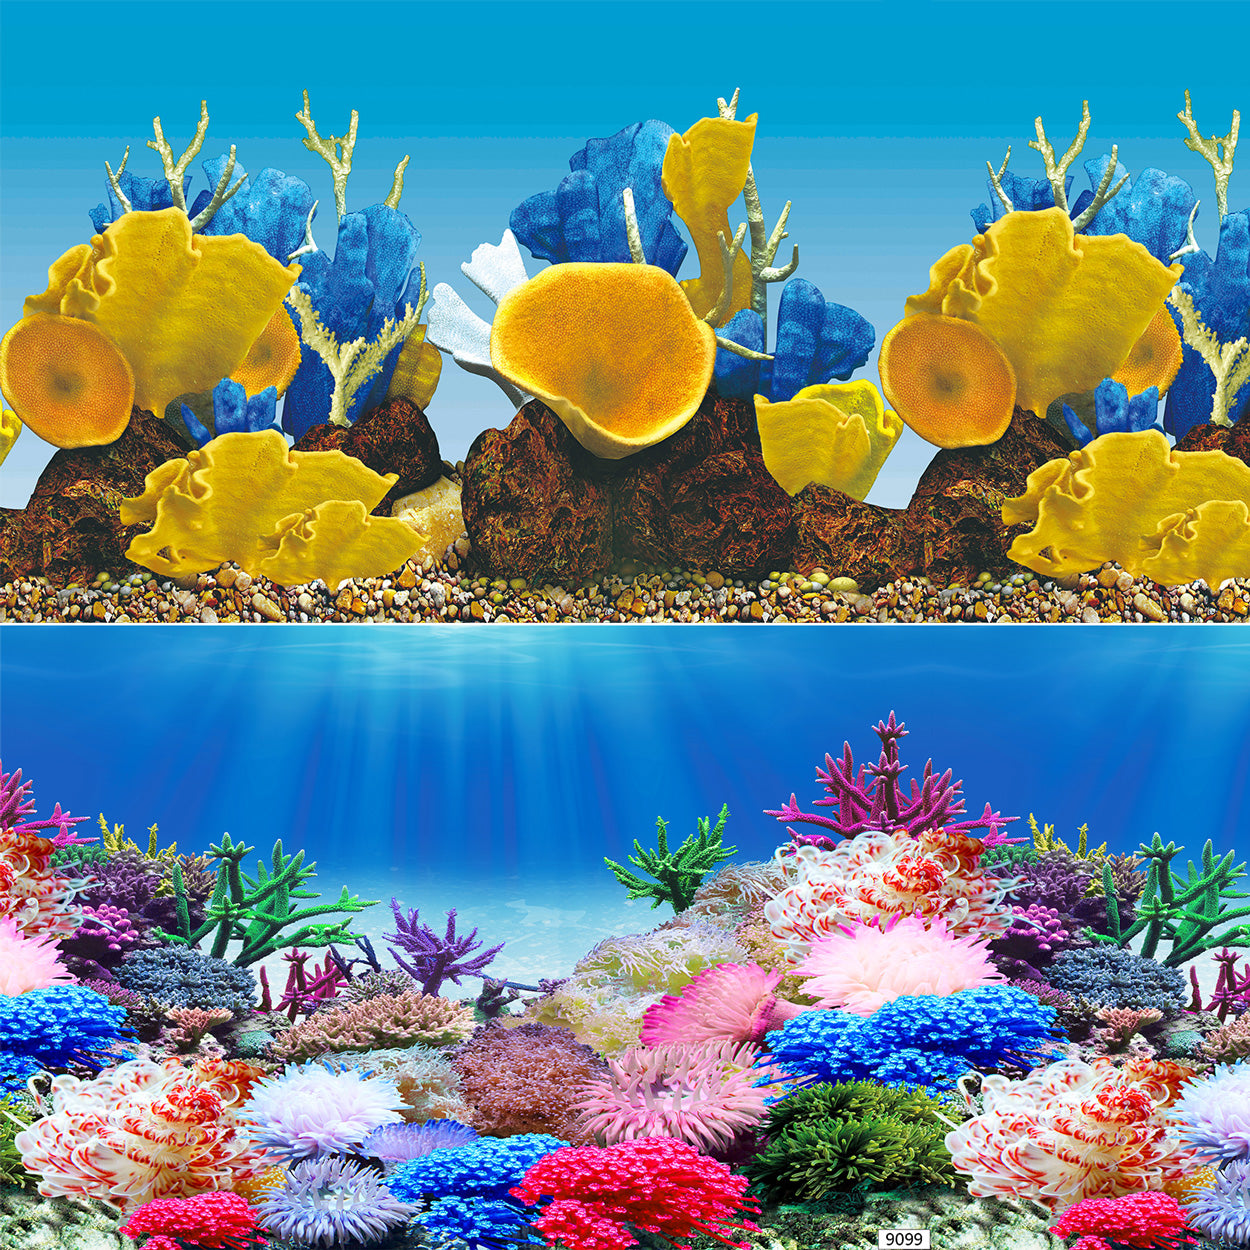 Underwater Treasures Aquarium Backgrounds - Per ft